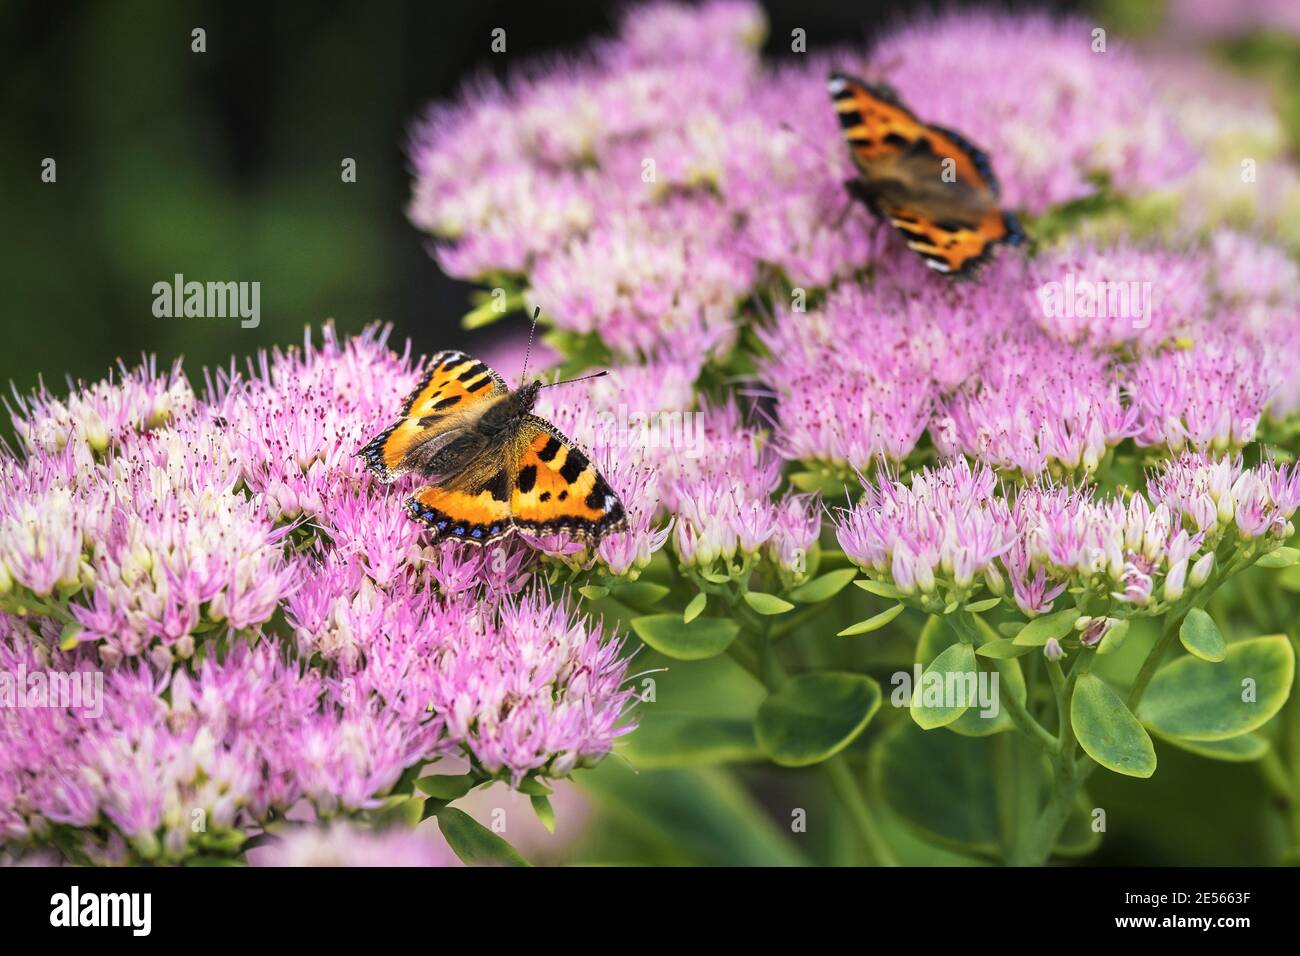 Petites Tortoiseshell papillons Aglais urtica se nourrissant des fleurs d'une plante de Sedum. Banque D'Images